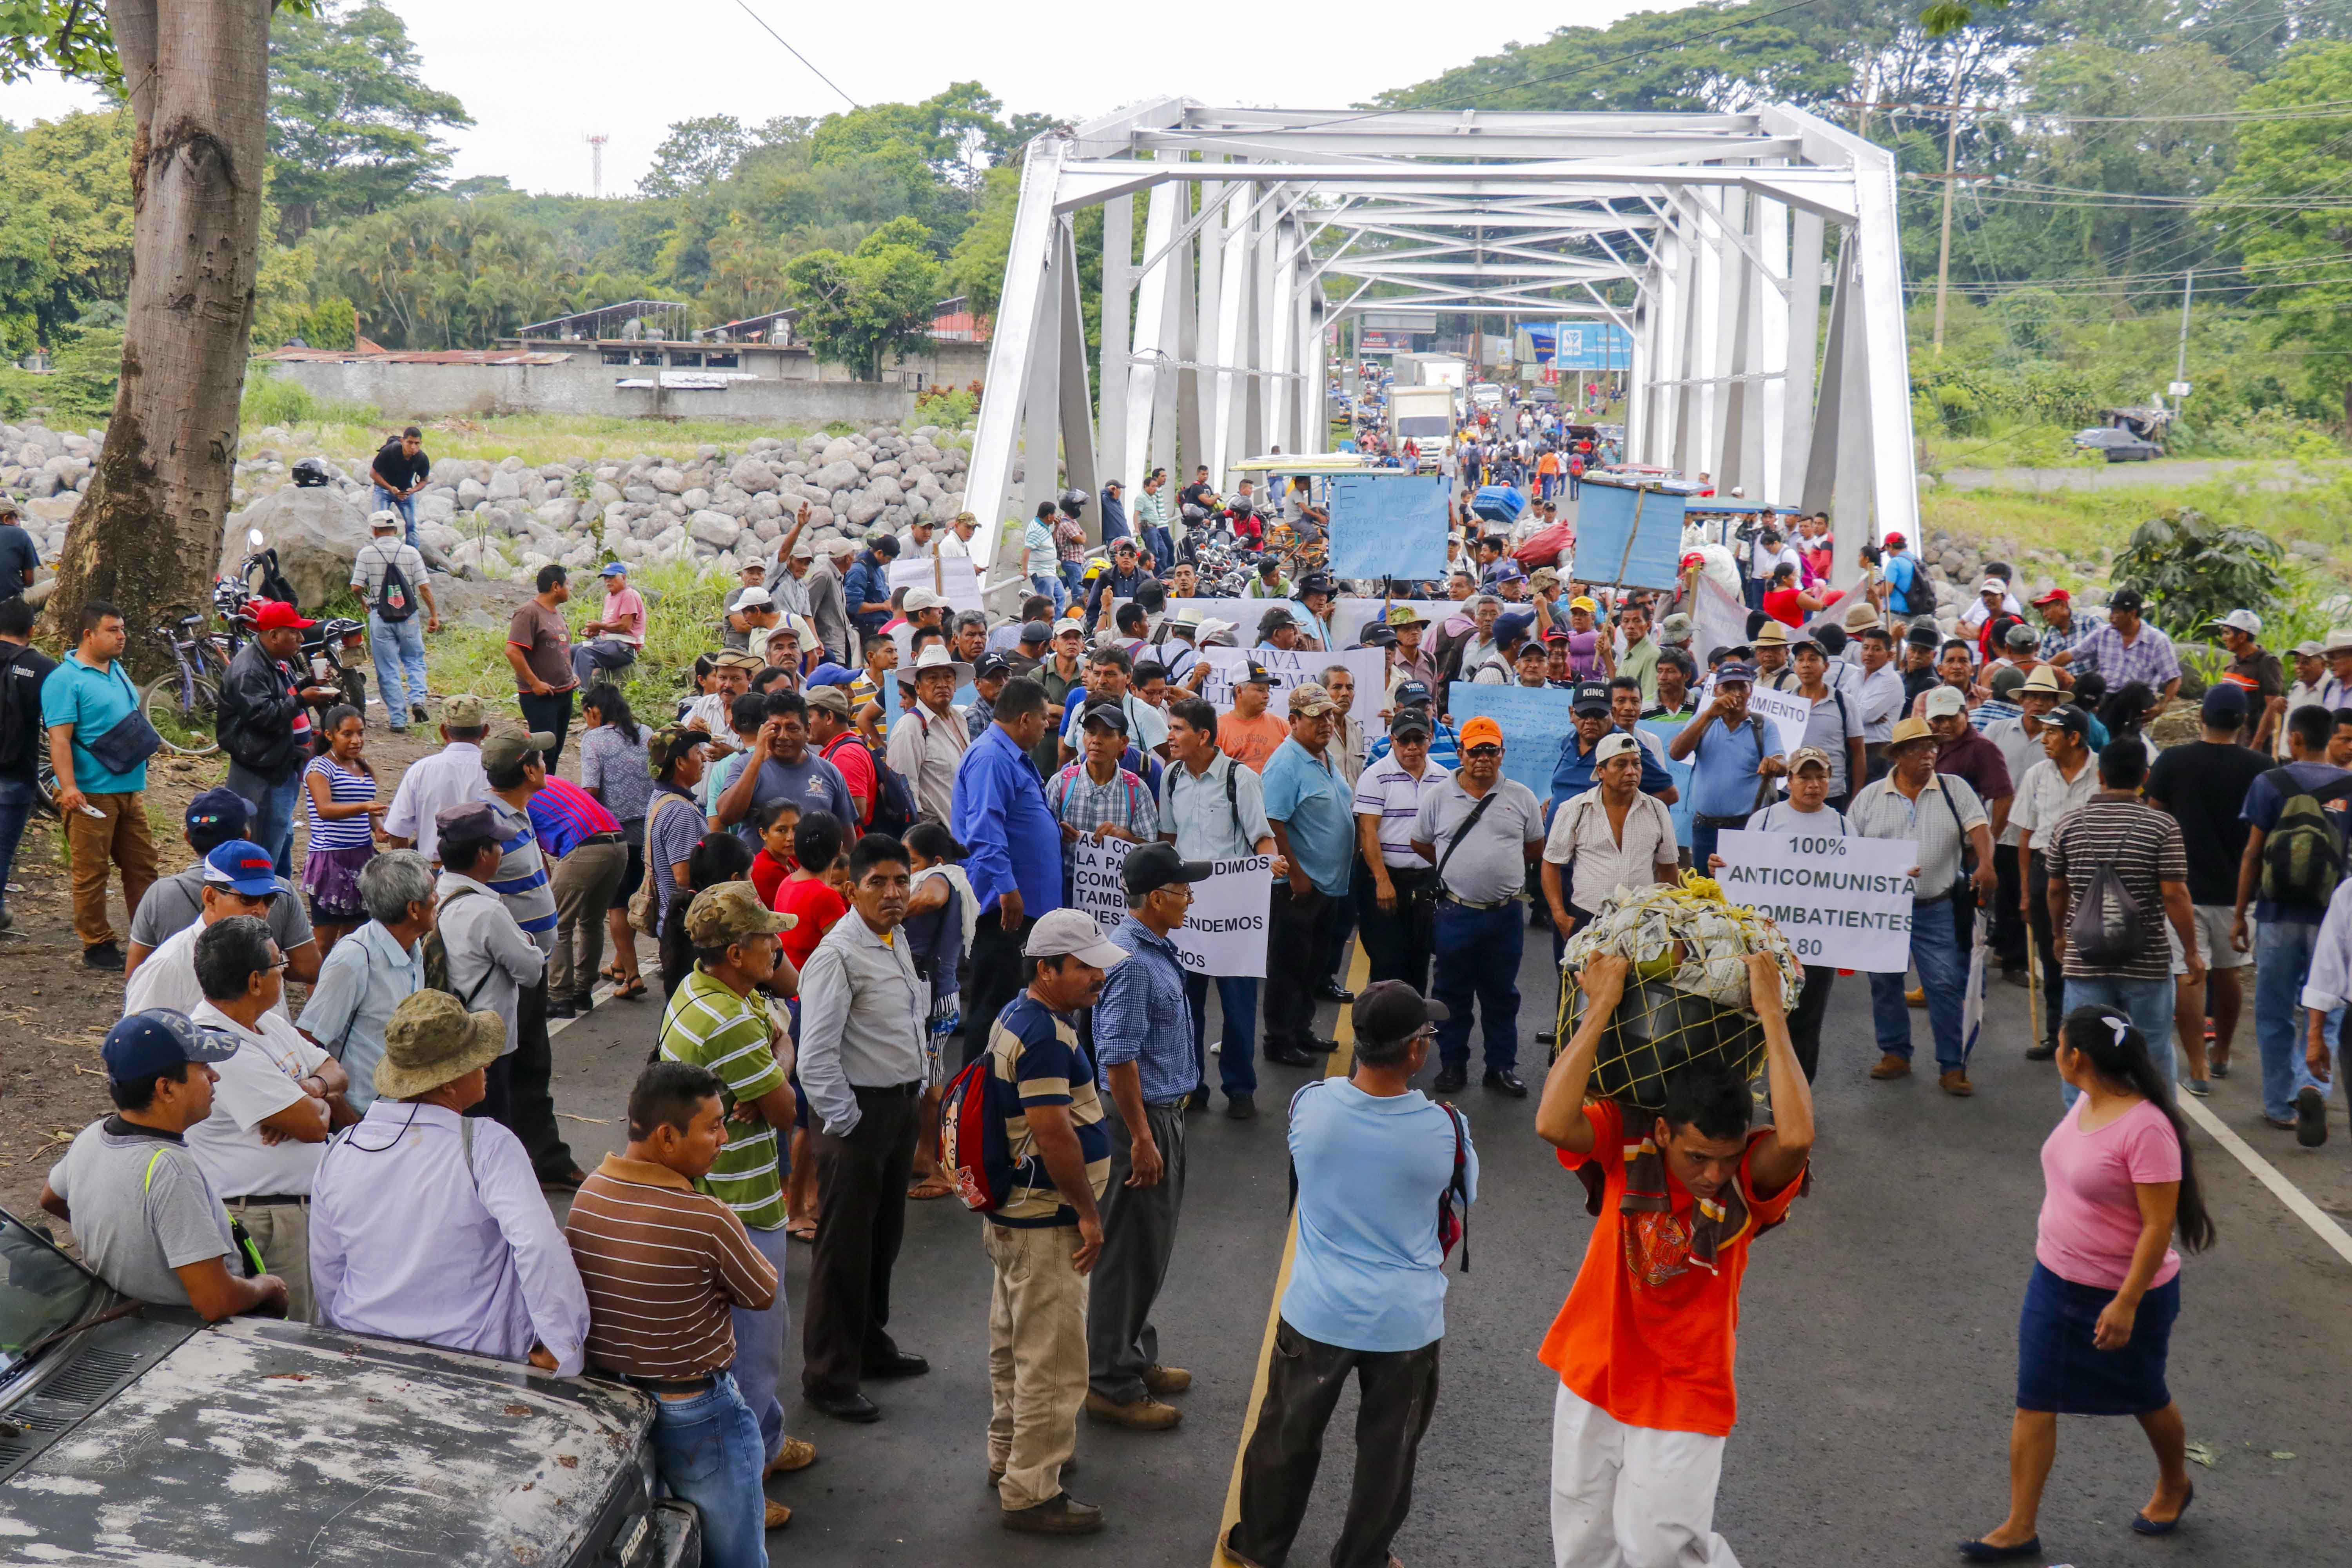 Los inconformes han bloqueado carreteras y amenazan con boicotear las elecciones si no hay indemnización para ellos. (Foto Prensa Libre: Hemeroteca PL)